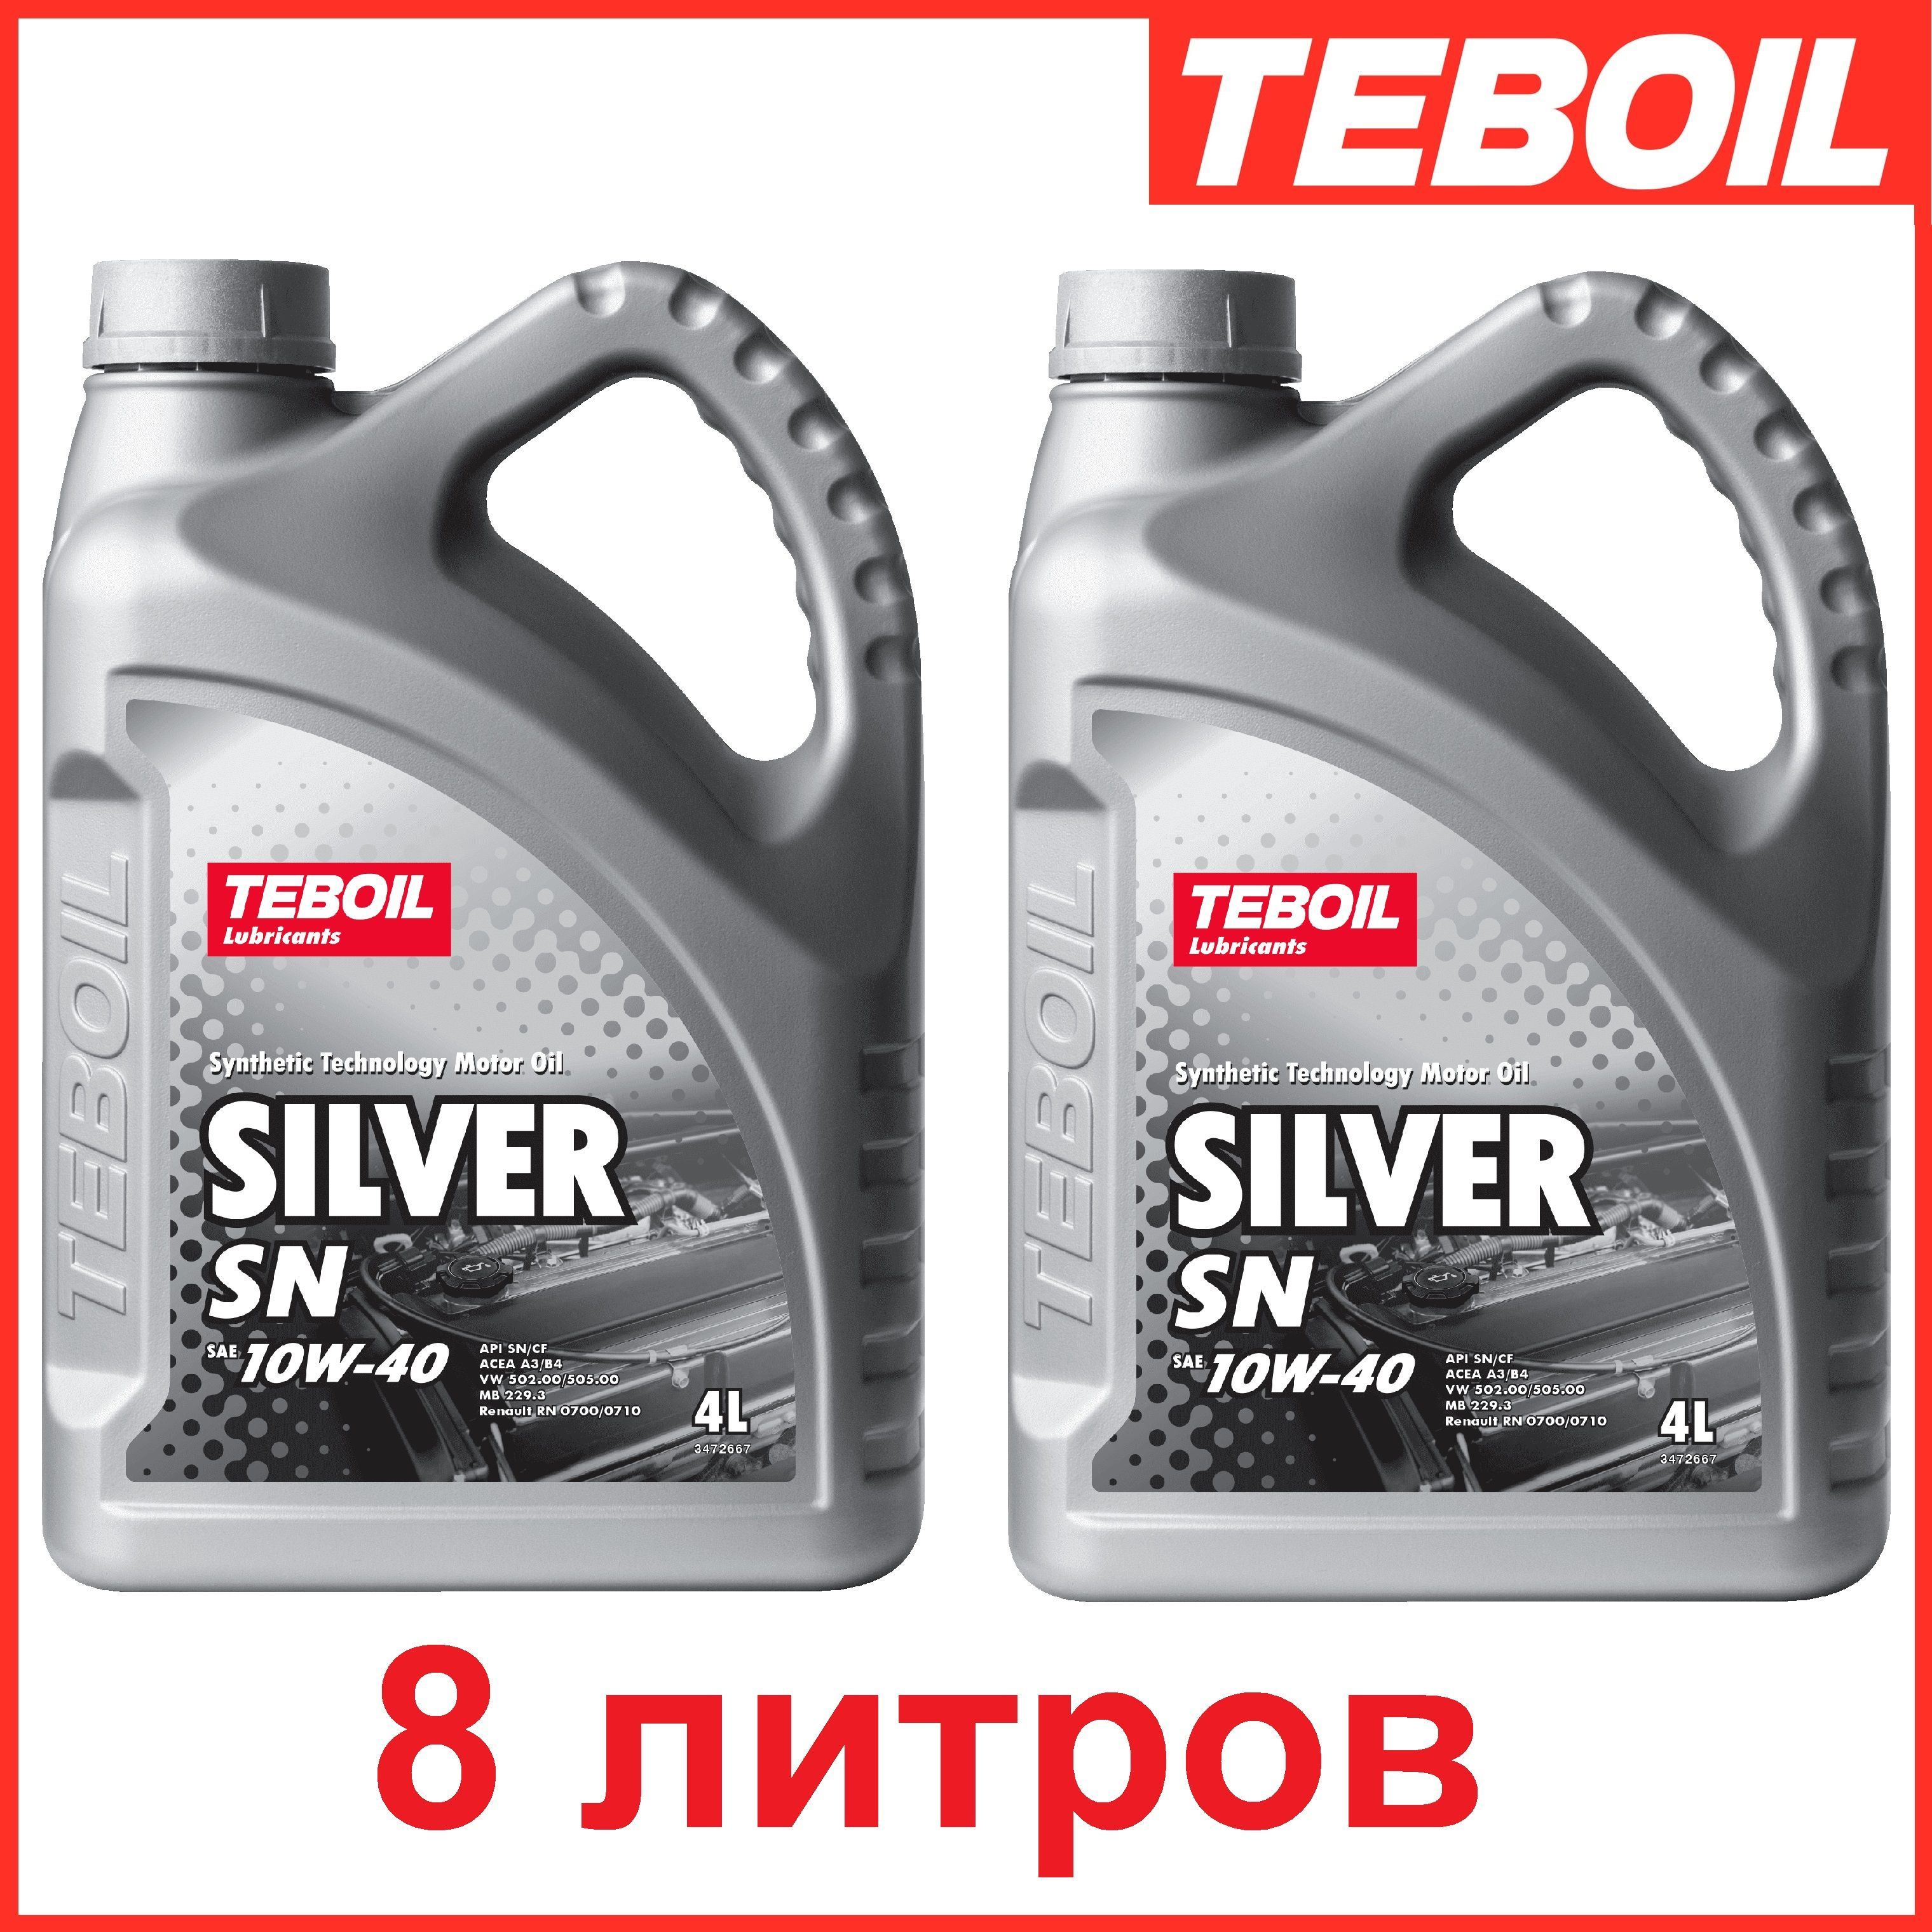 Моторное масло тебойл 5w40 отзывы. Teboil Silver 10w-40. Teboil Silver SN 10w-40. Teboil Silver SN 10w 40 4 л. Teboil Silver SN 10w-40 артикул.